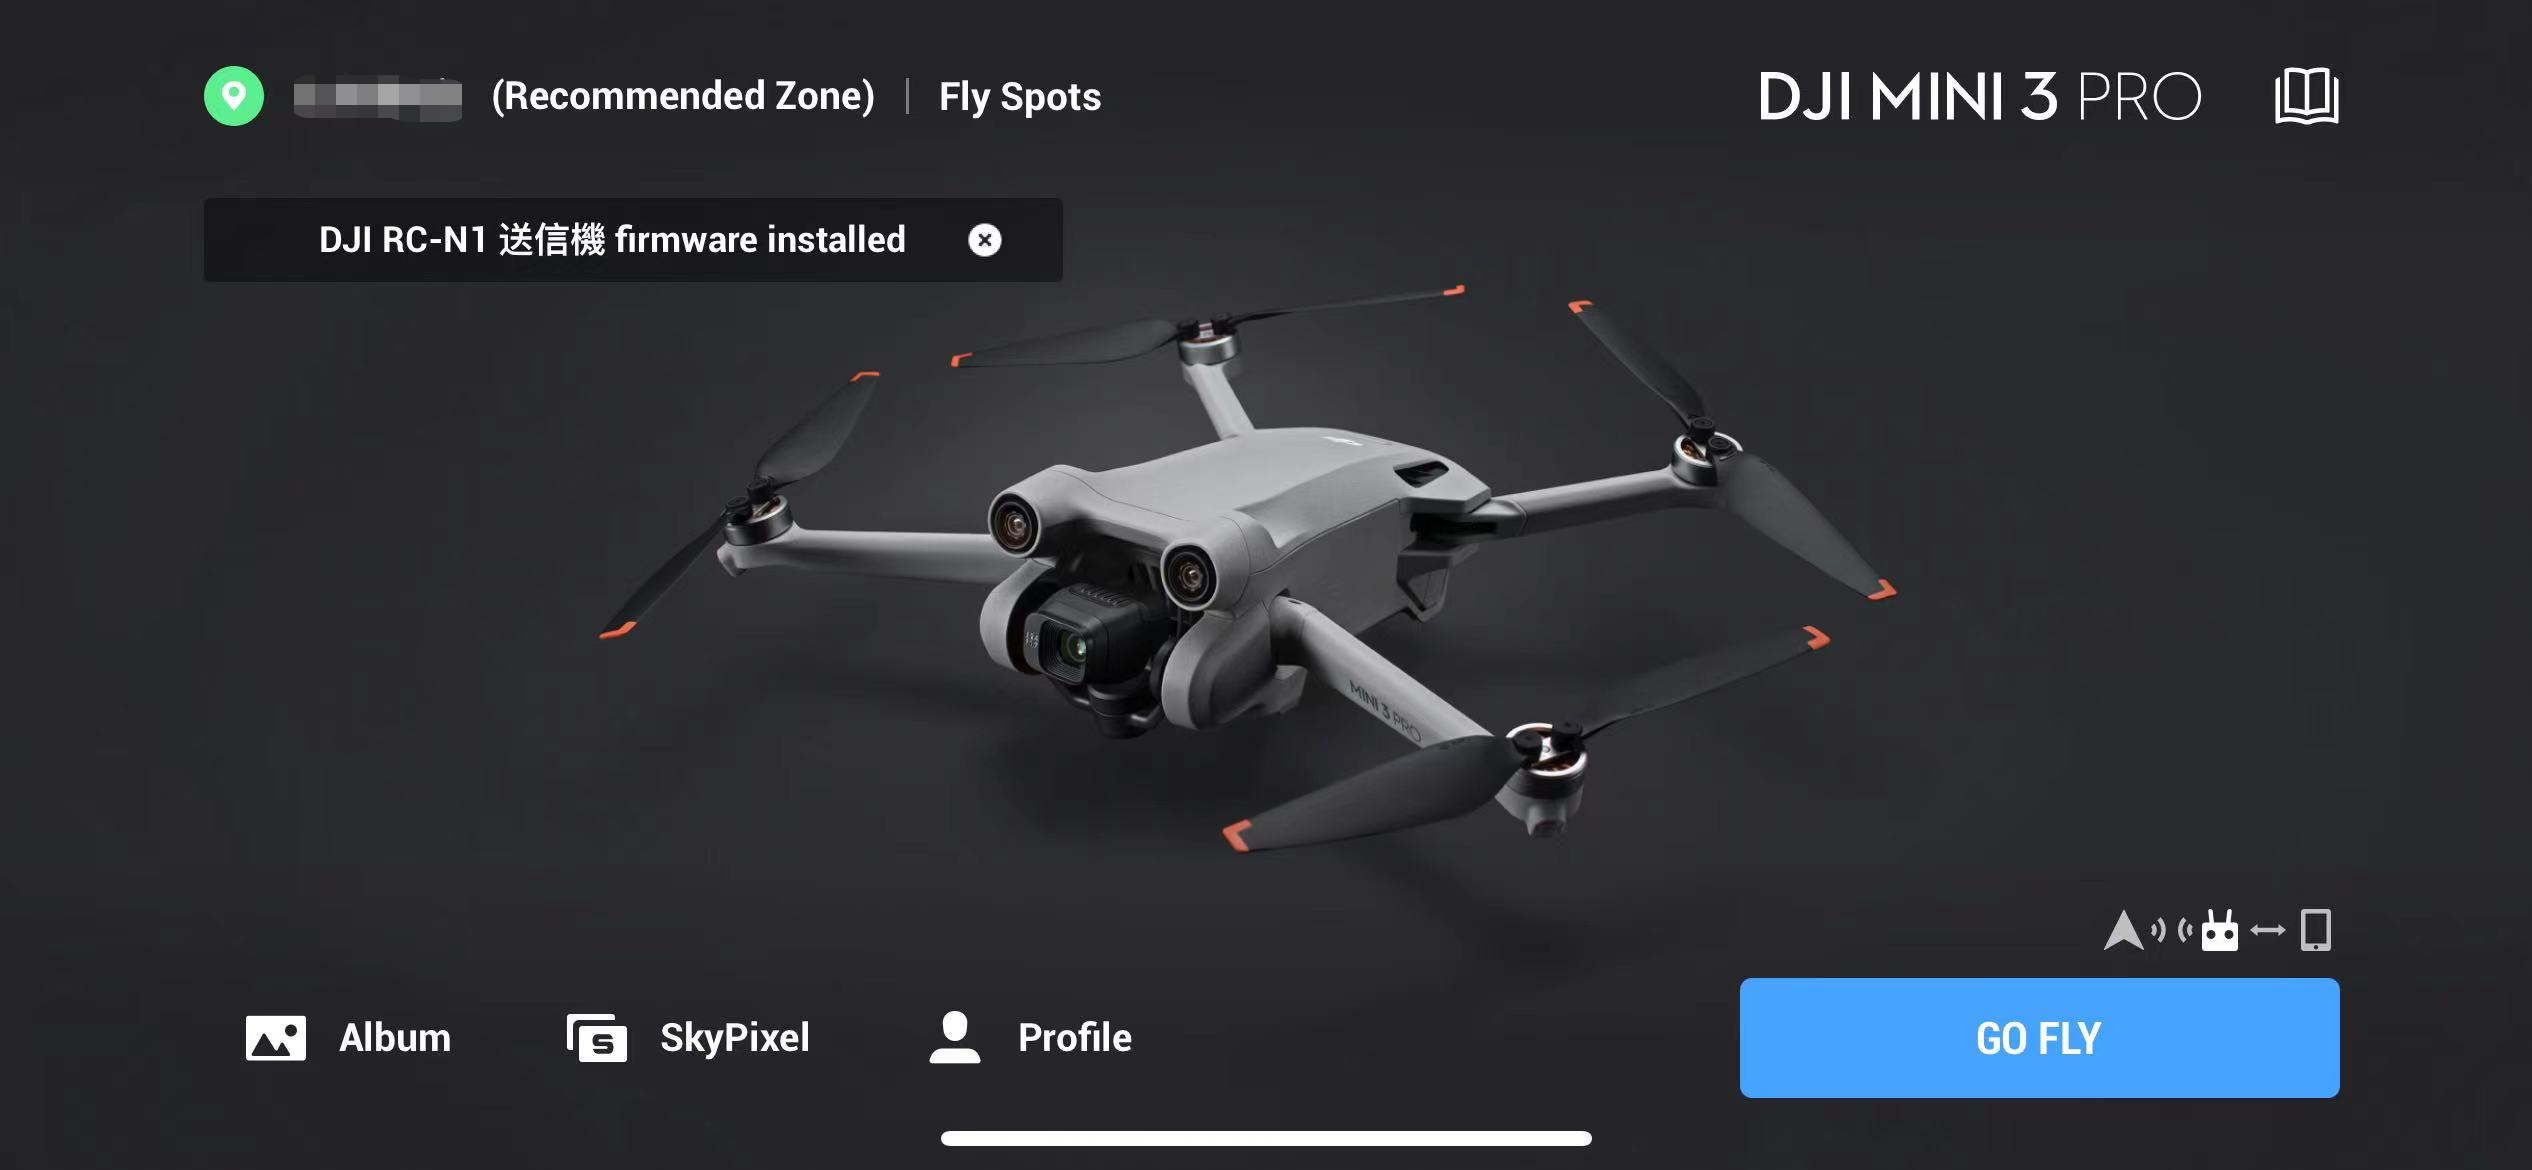 En skärmdump av DJI Fly-appen visar DJI Mini 3 Pro-drönaren med alternativ och statusmeddelanden, inklusive "Recommended Zone" och firmwarestatus. Knappar för "Album", "SkyPixel", "Profile" och "Go Fly" syns också.